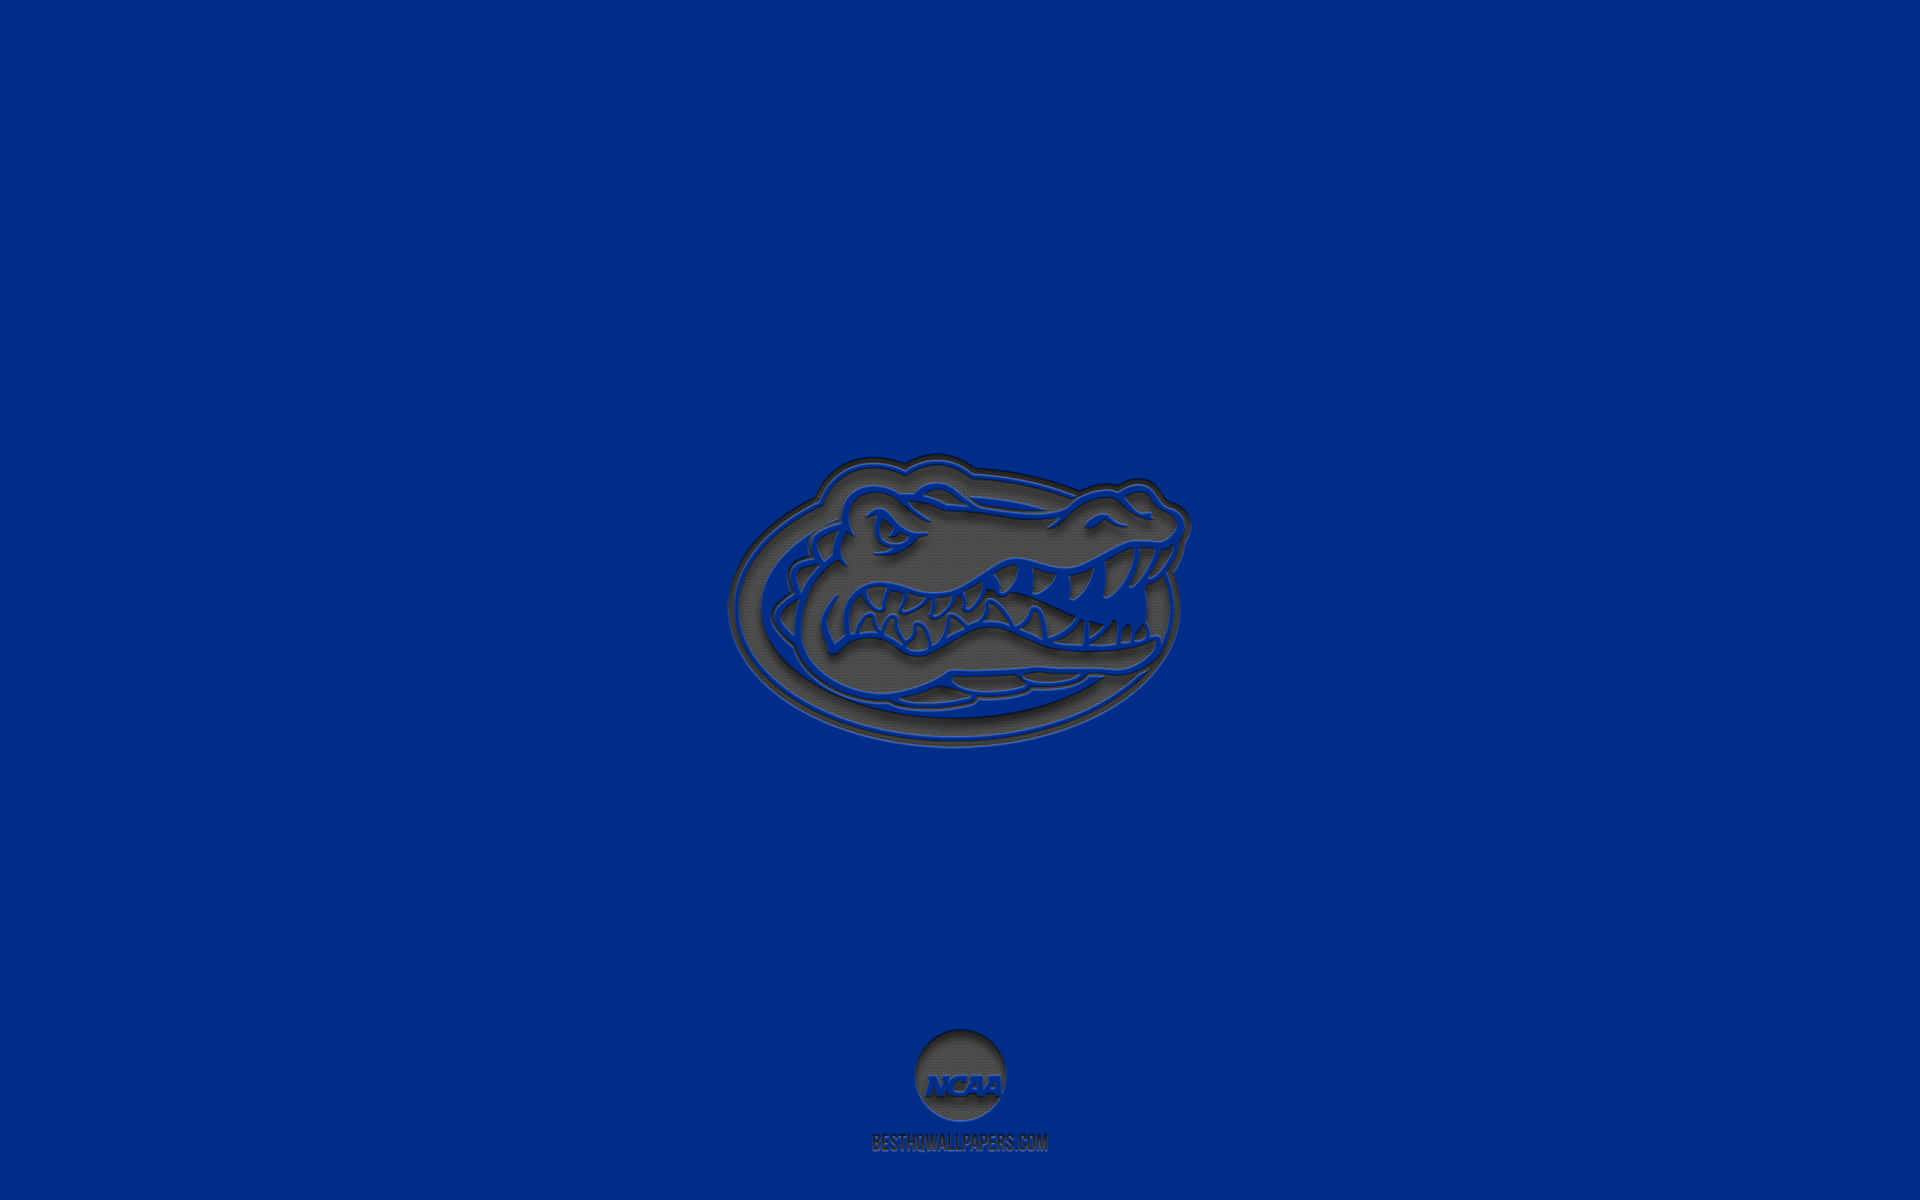 Ellogo De Los Florida Gators En Un Fondo Azul. Fondo de pantalla